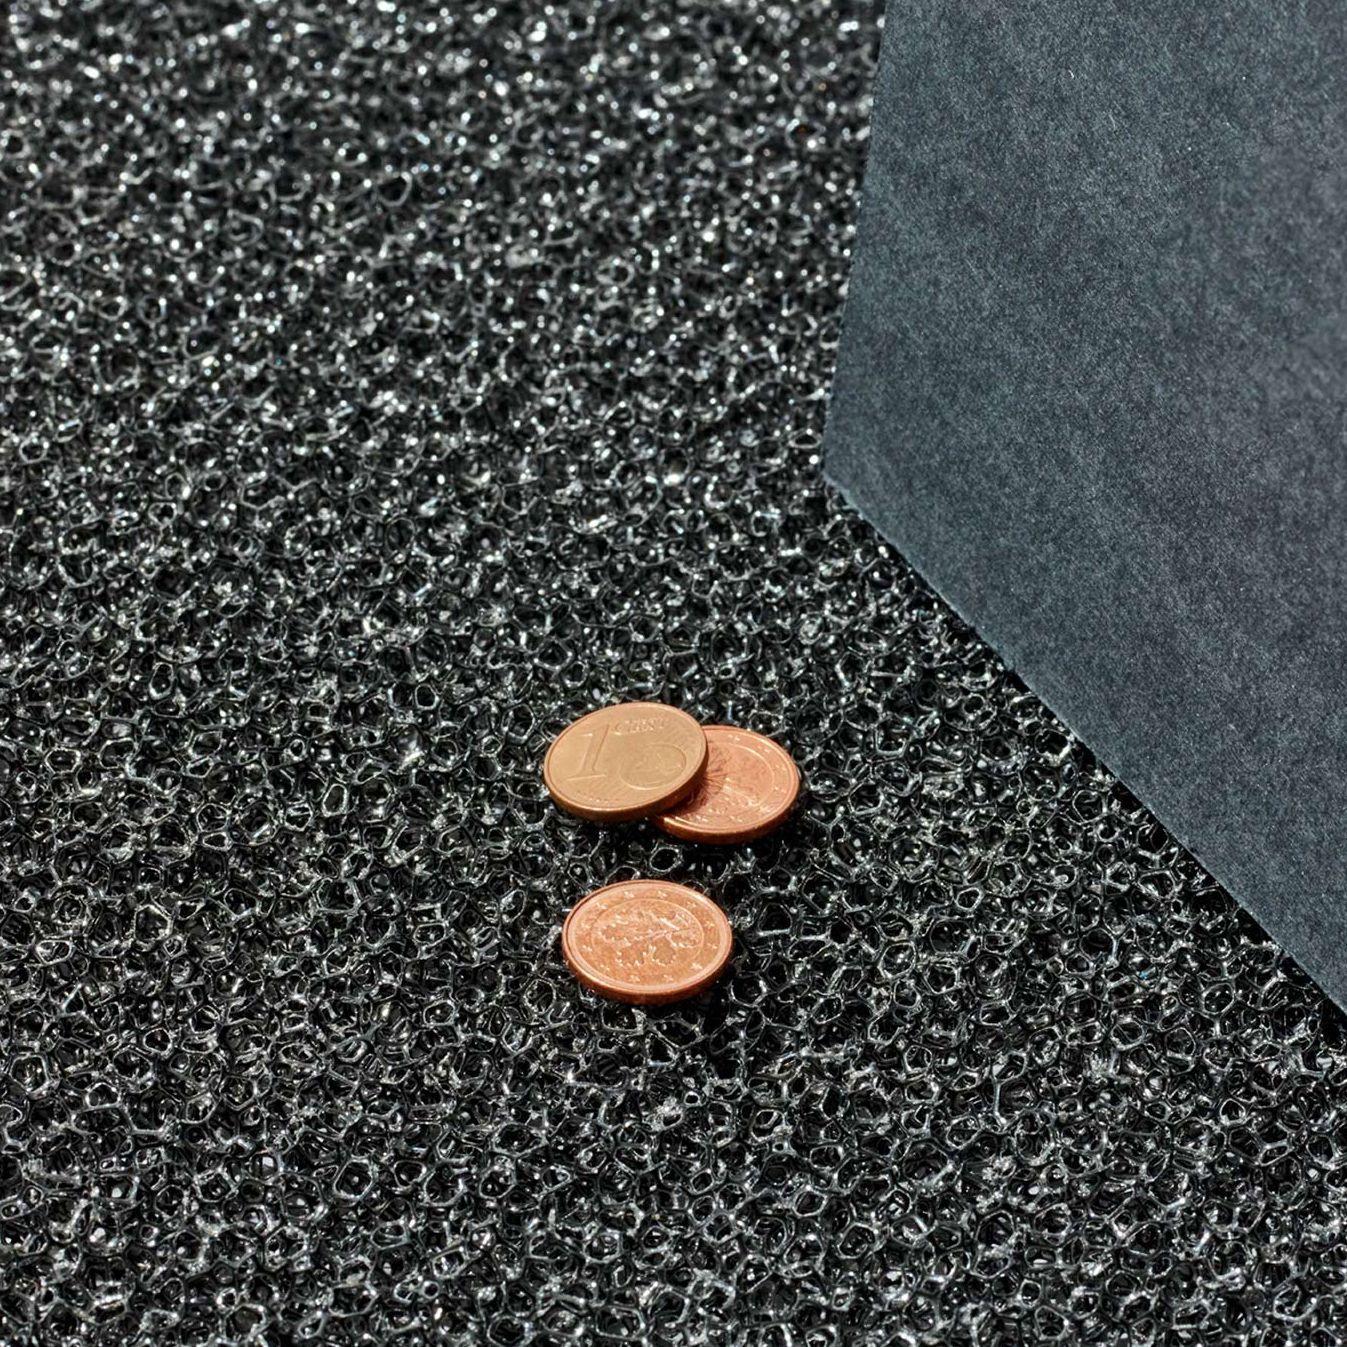 Drei Ein-Cent-Münzen liegen auf schwarzem Untergrund.